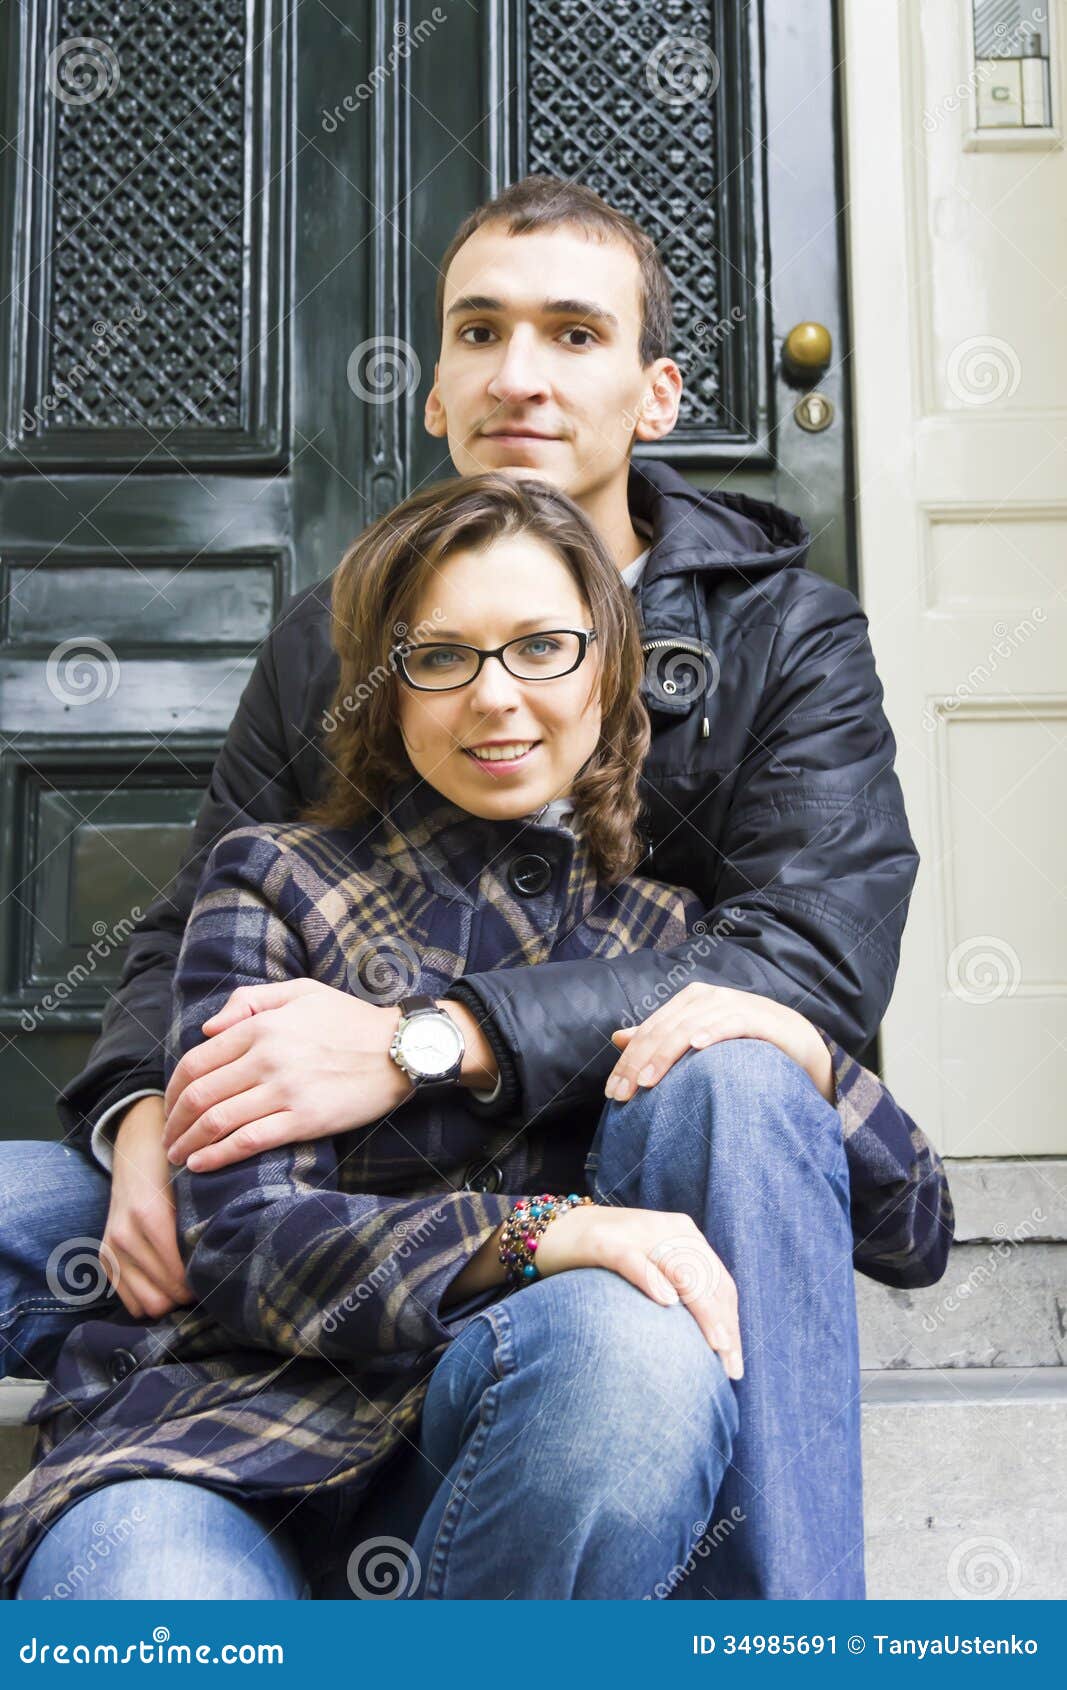 Amateur teen couple dutch image picture